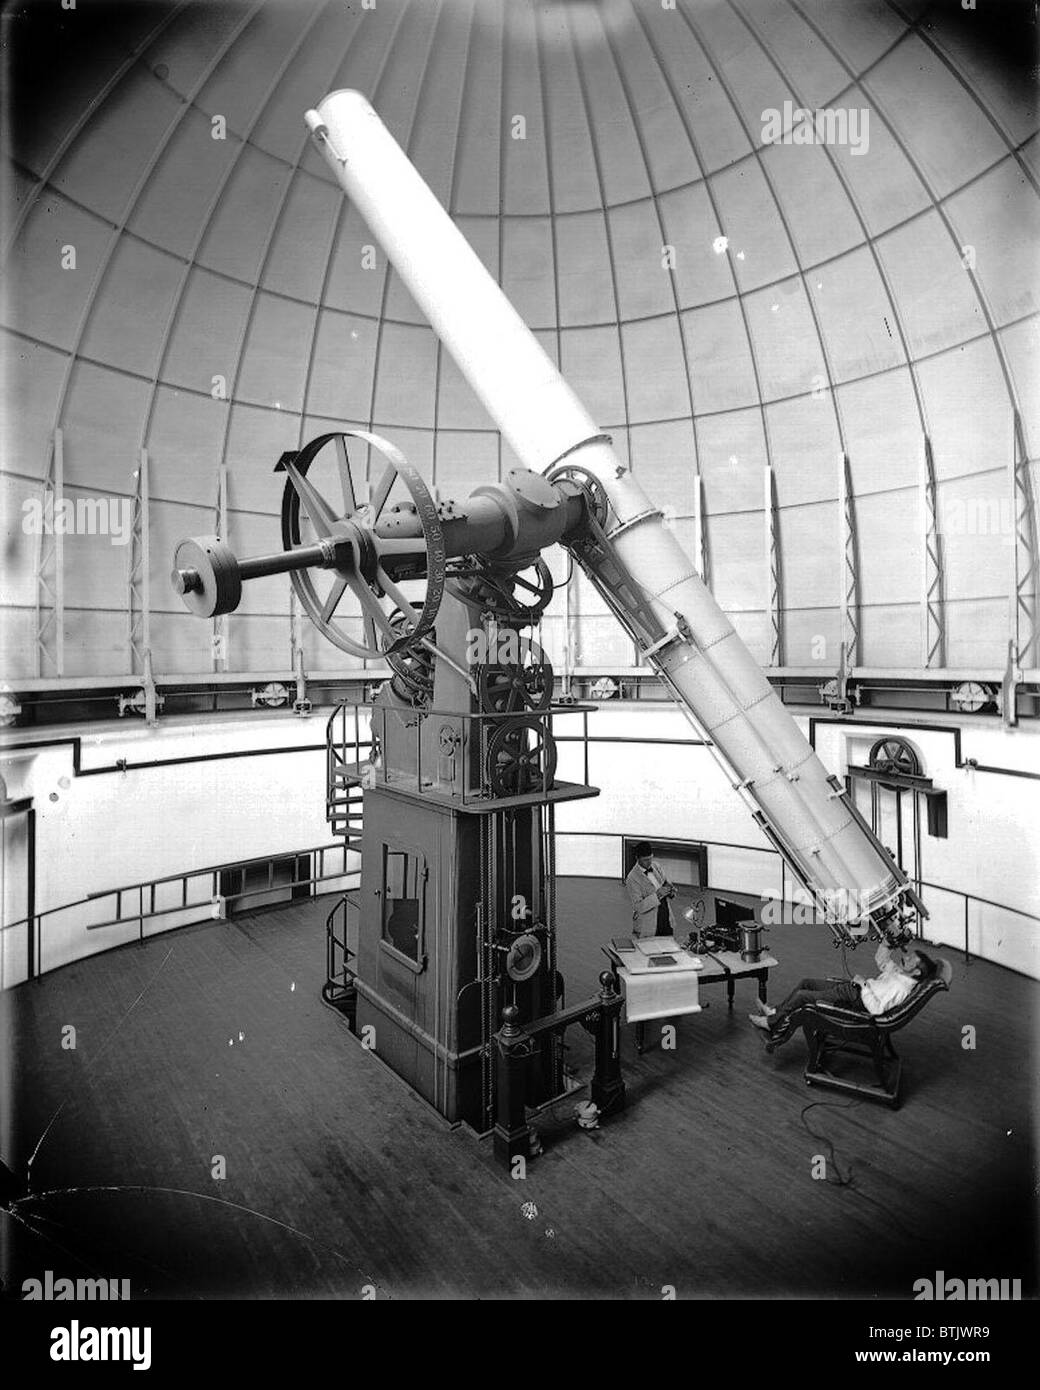 Astronomie, das 26-Zoll-Teleskop des US Naval Observatory. Wenn sie zum ersten Mal war installiert, im Jahre 1873 es das größte Refracting Teleskop der Welt. ca. 1896 Stockfoto